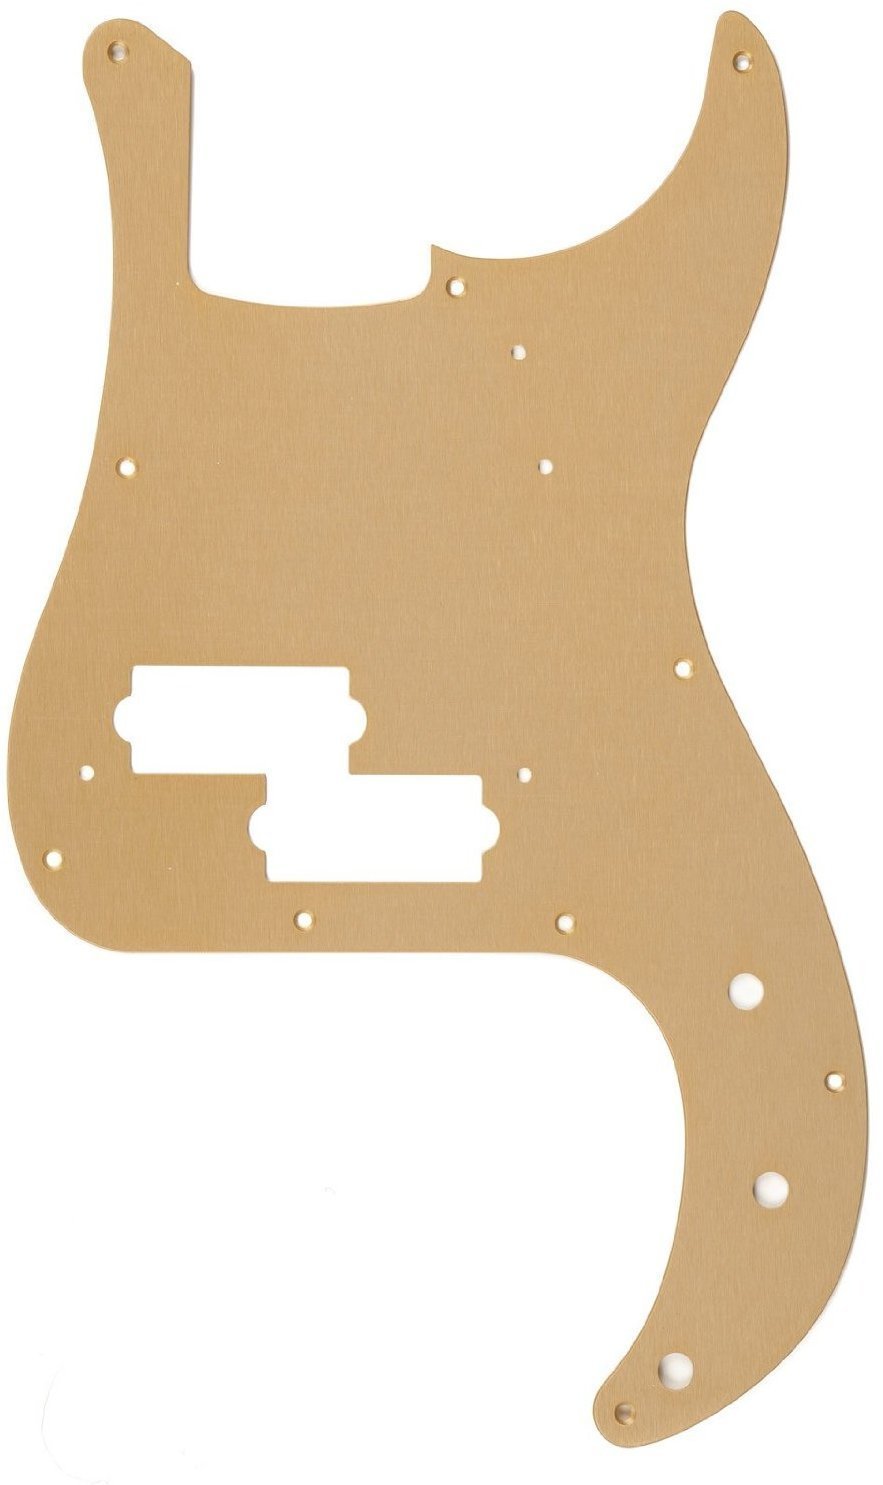 Pickguard pour Basse
 Fender 58 Precision Bass Gold Pickguard pour Basse
